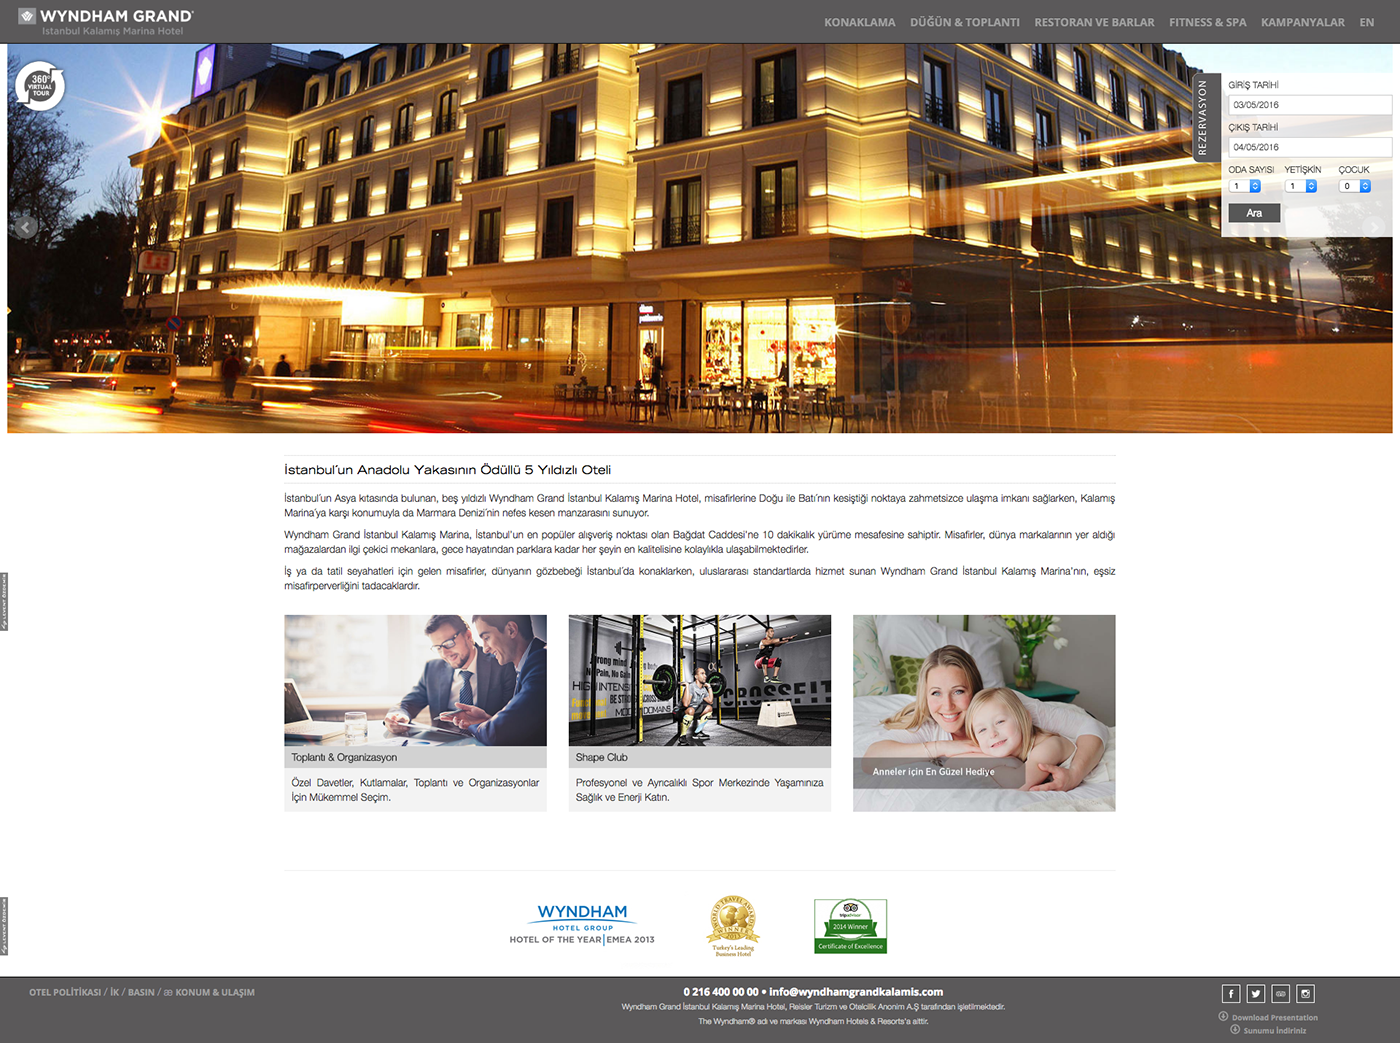 hotel otel wyndham Web site grand istanbul kalamış tourism turizm